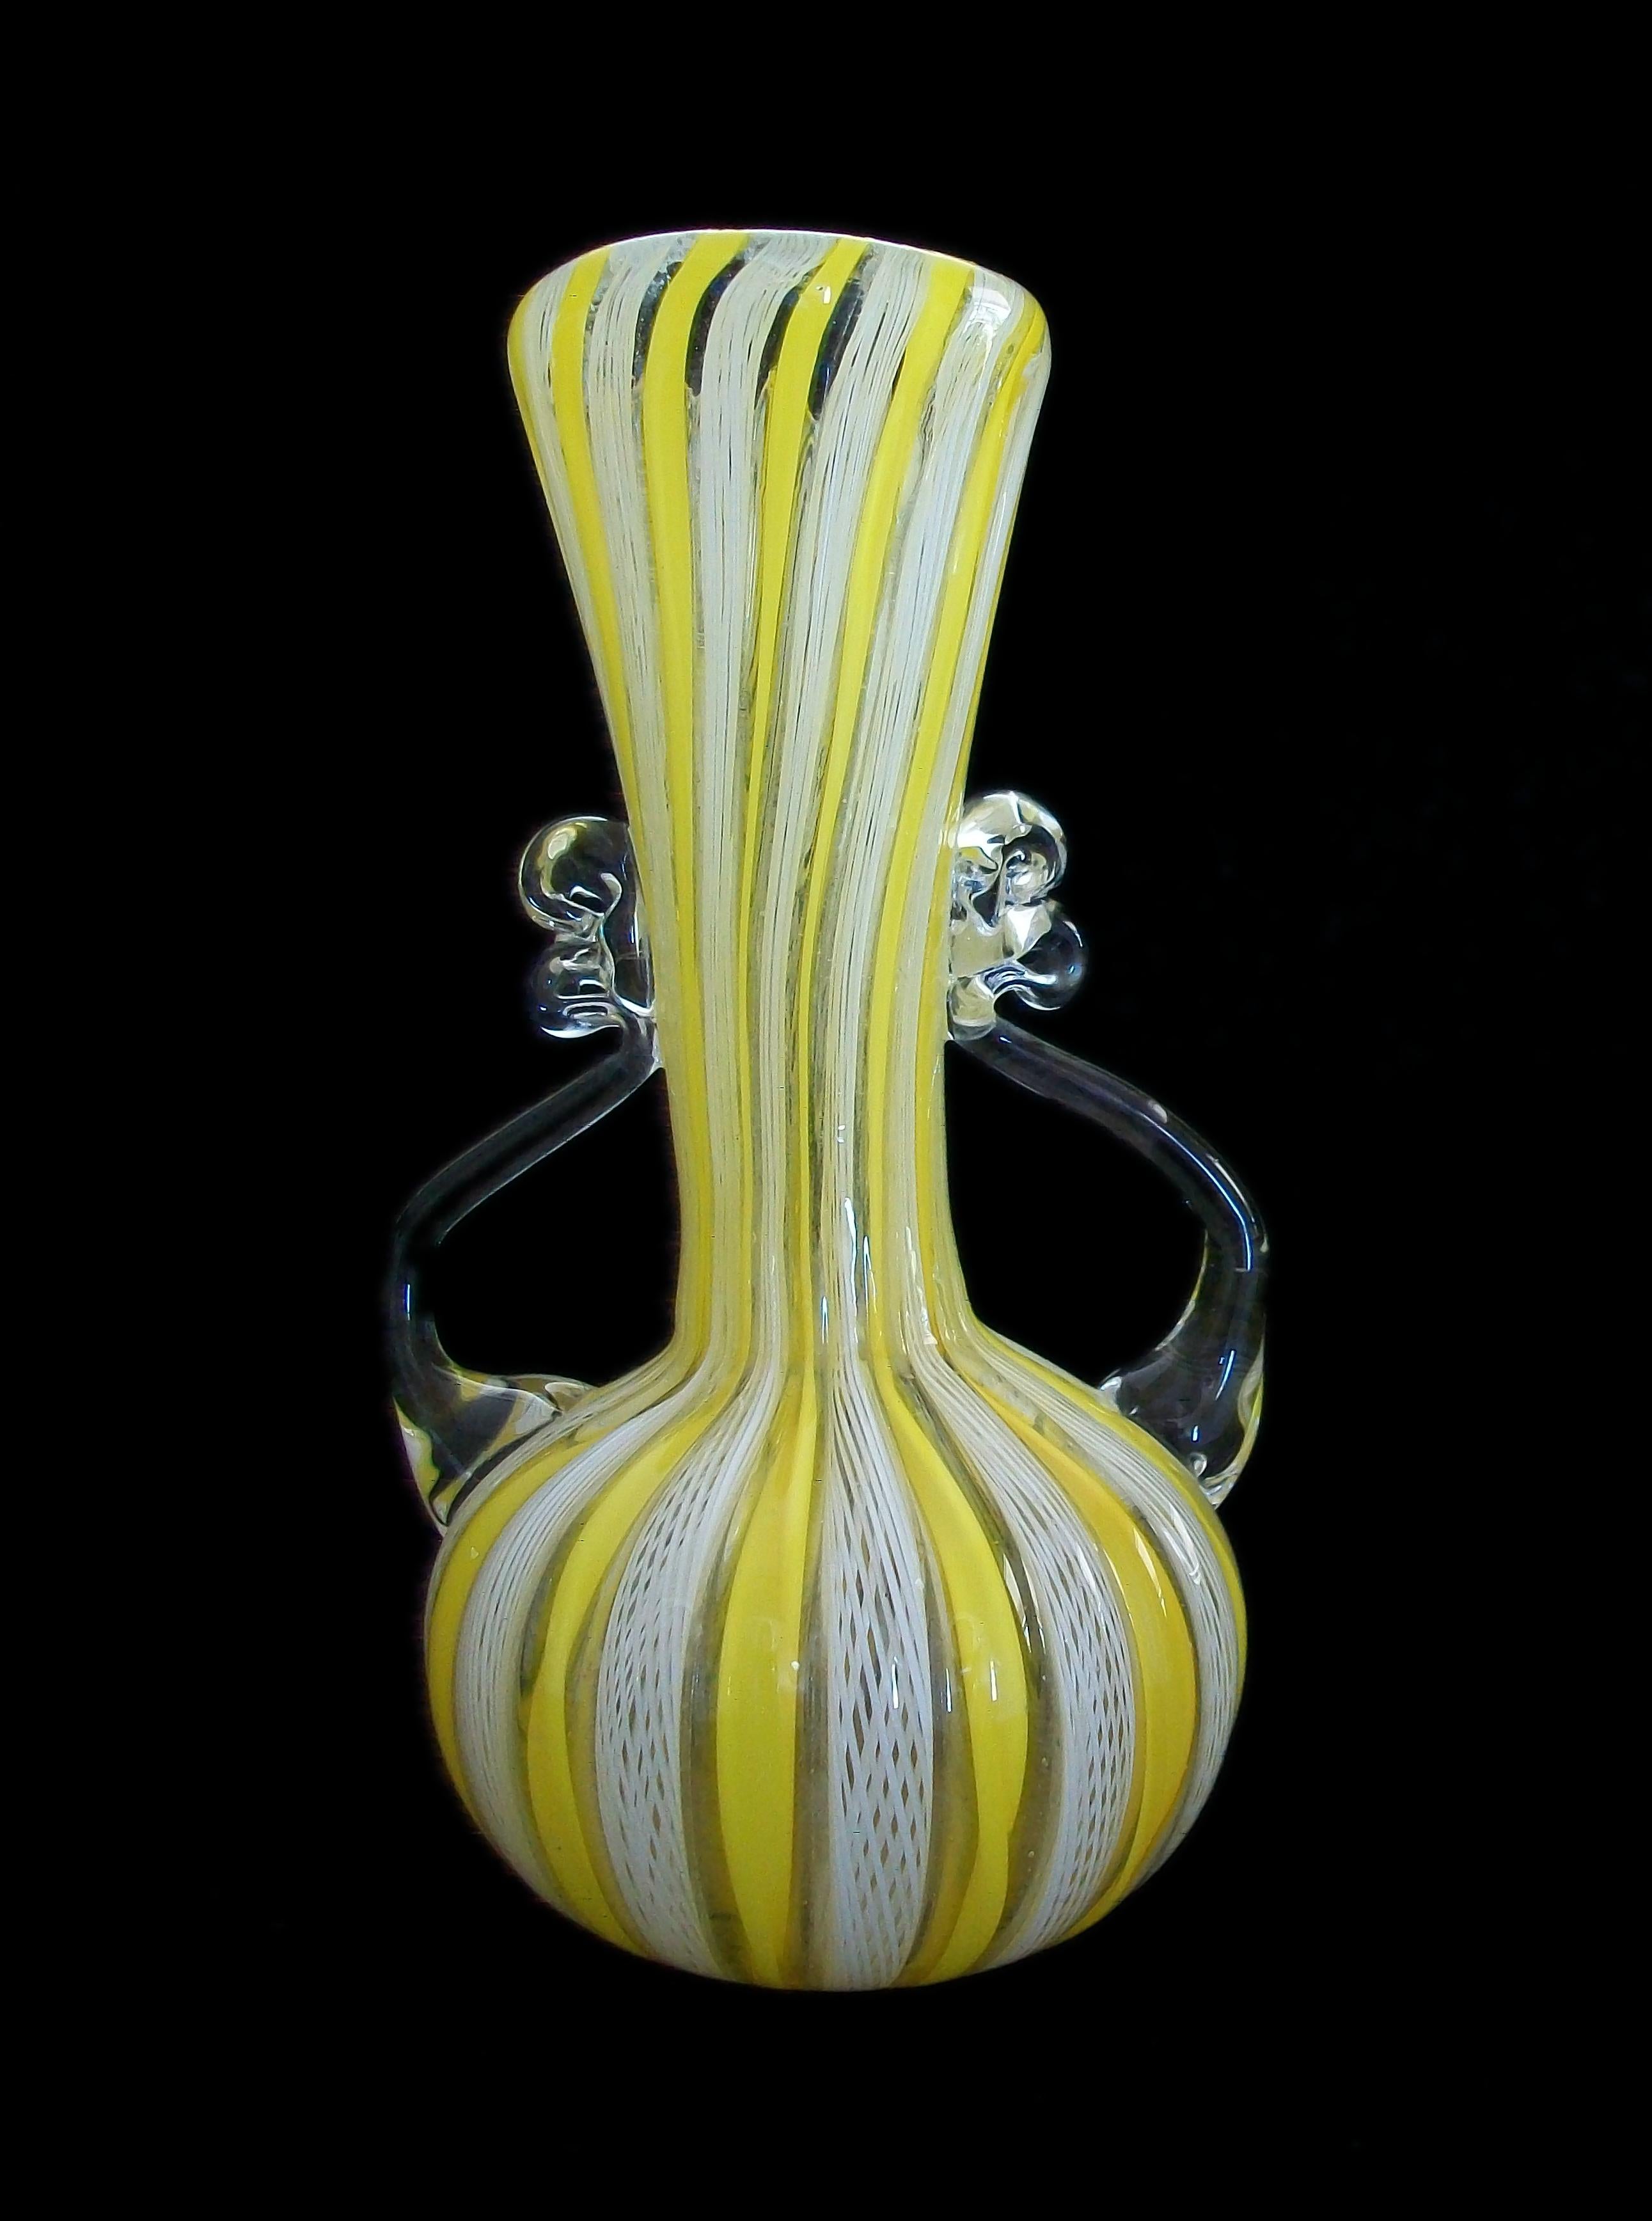 Vase en verre Latticino de Murano, datant du milieu du siècle dernier - deux anses en verre transparent - petit format d'armoire - base polie semi lisse - non signé - Italie - circa 1960's.

Excellent/neutre état vintage - rayures mineures à la